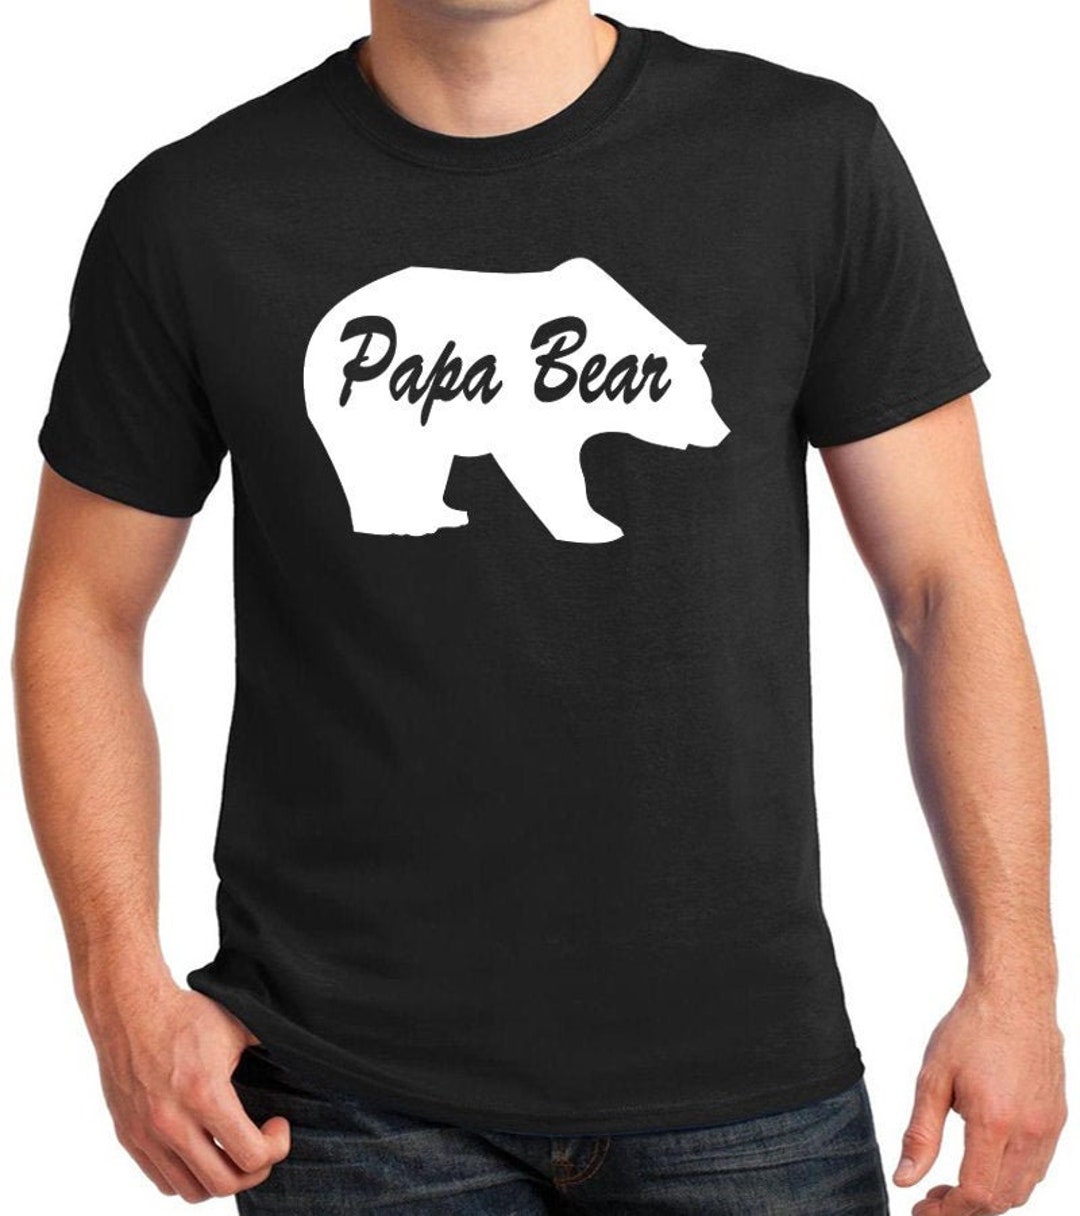 Papa Bear T-shirt, Great Gift Shirt for Dad, Big Bear, Provider, Leader ...